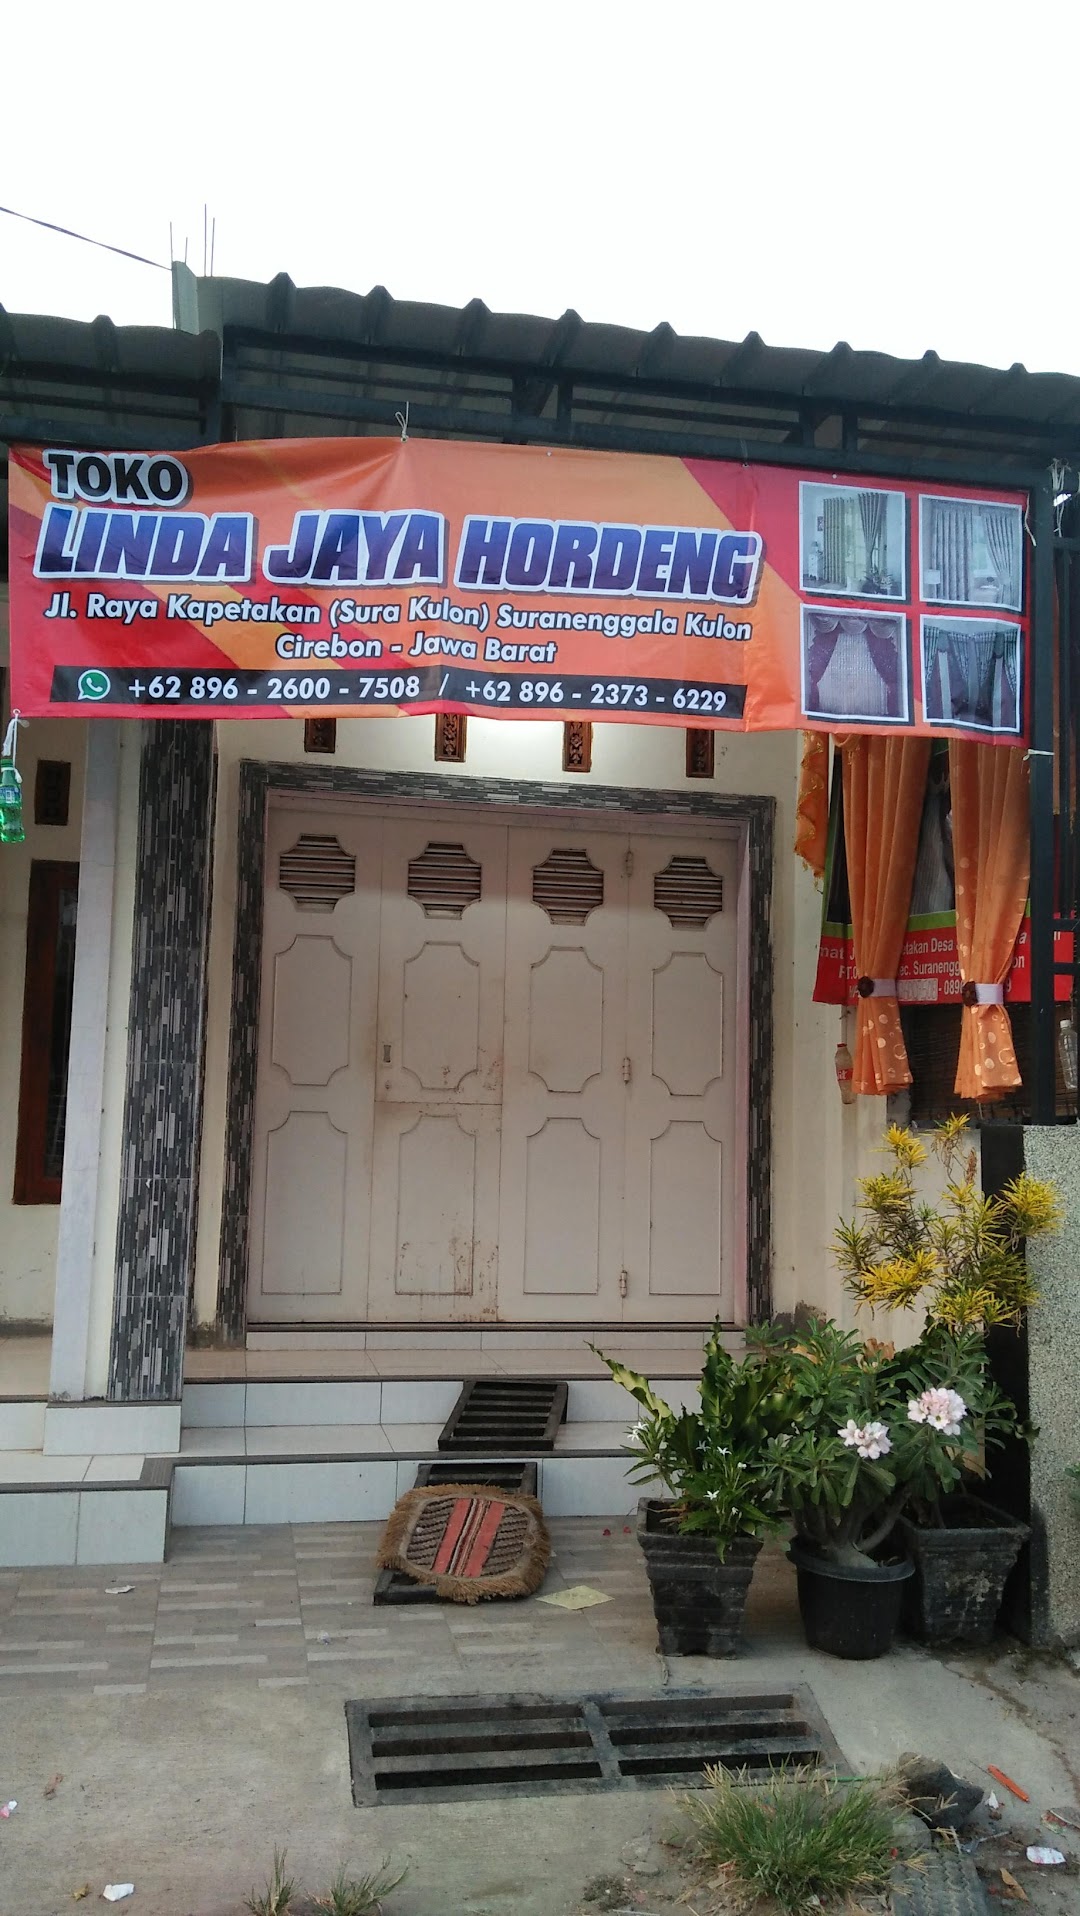 Toko Hordeng Linda Jaya Bedulan